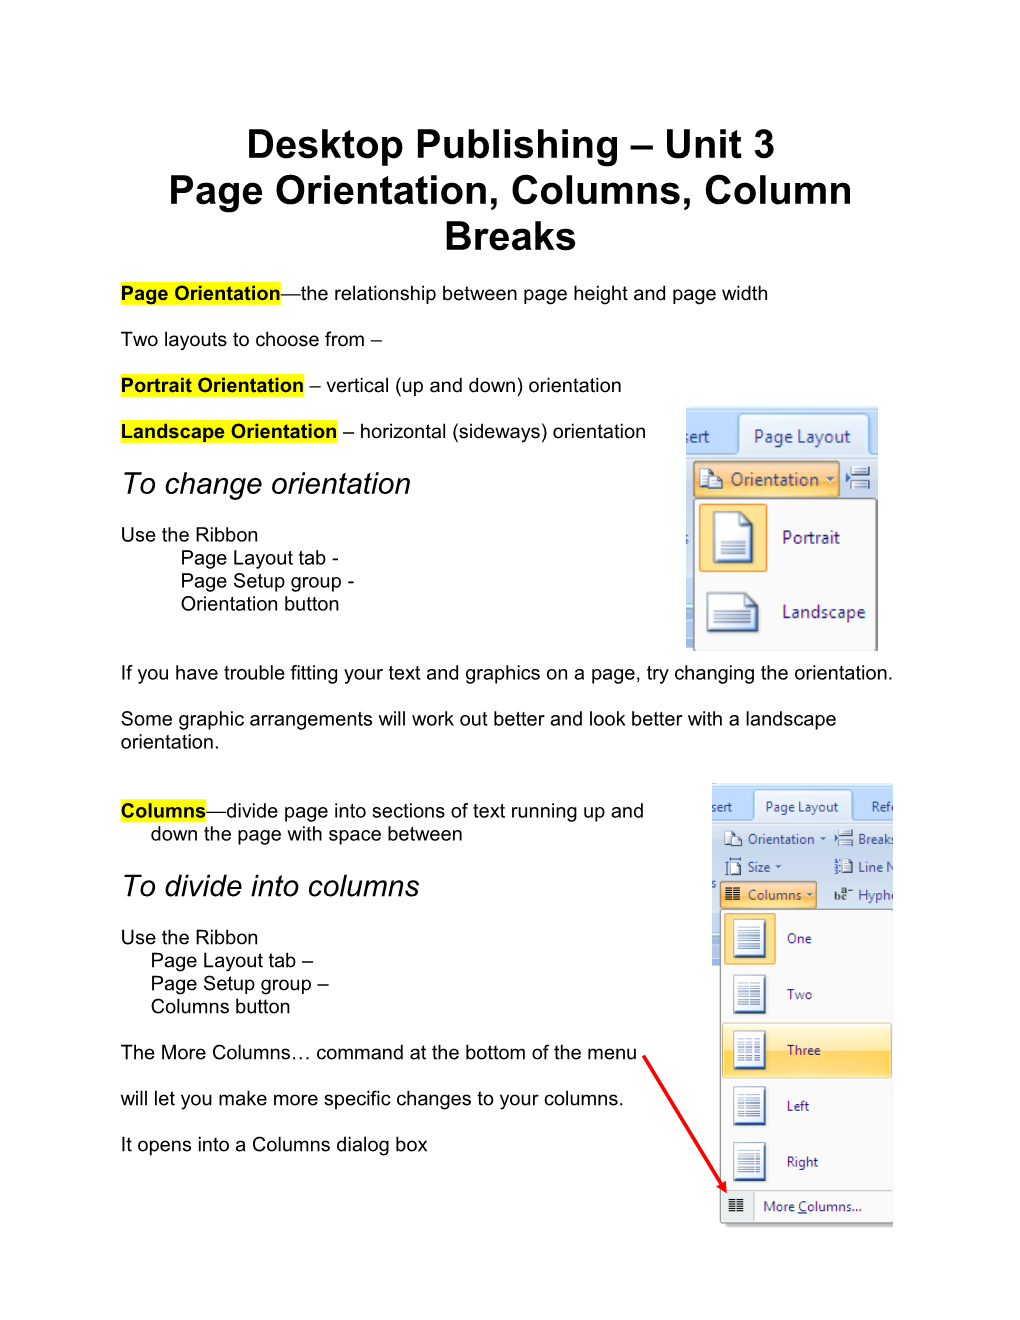 Desktop Publishing – Unit 3 Page Orientation, Columns, Column Breaks